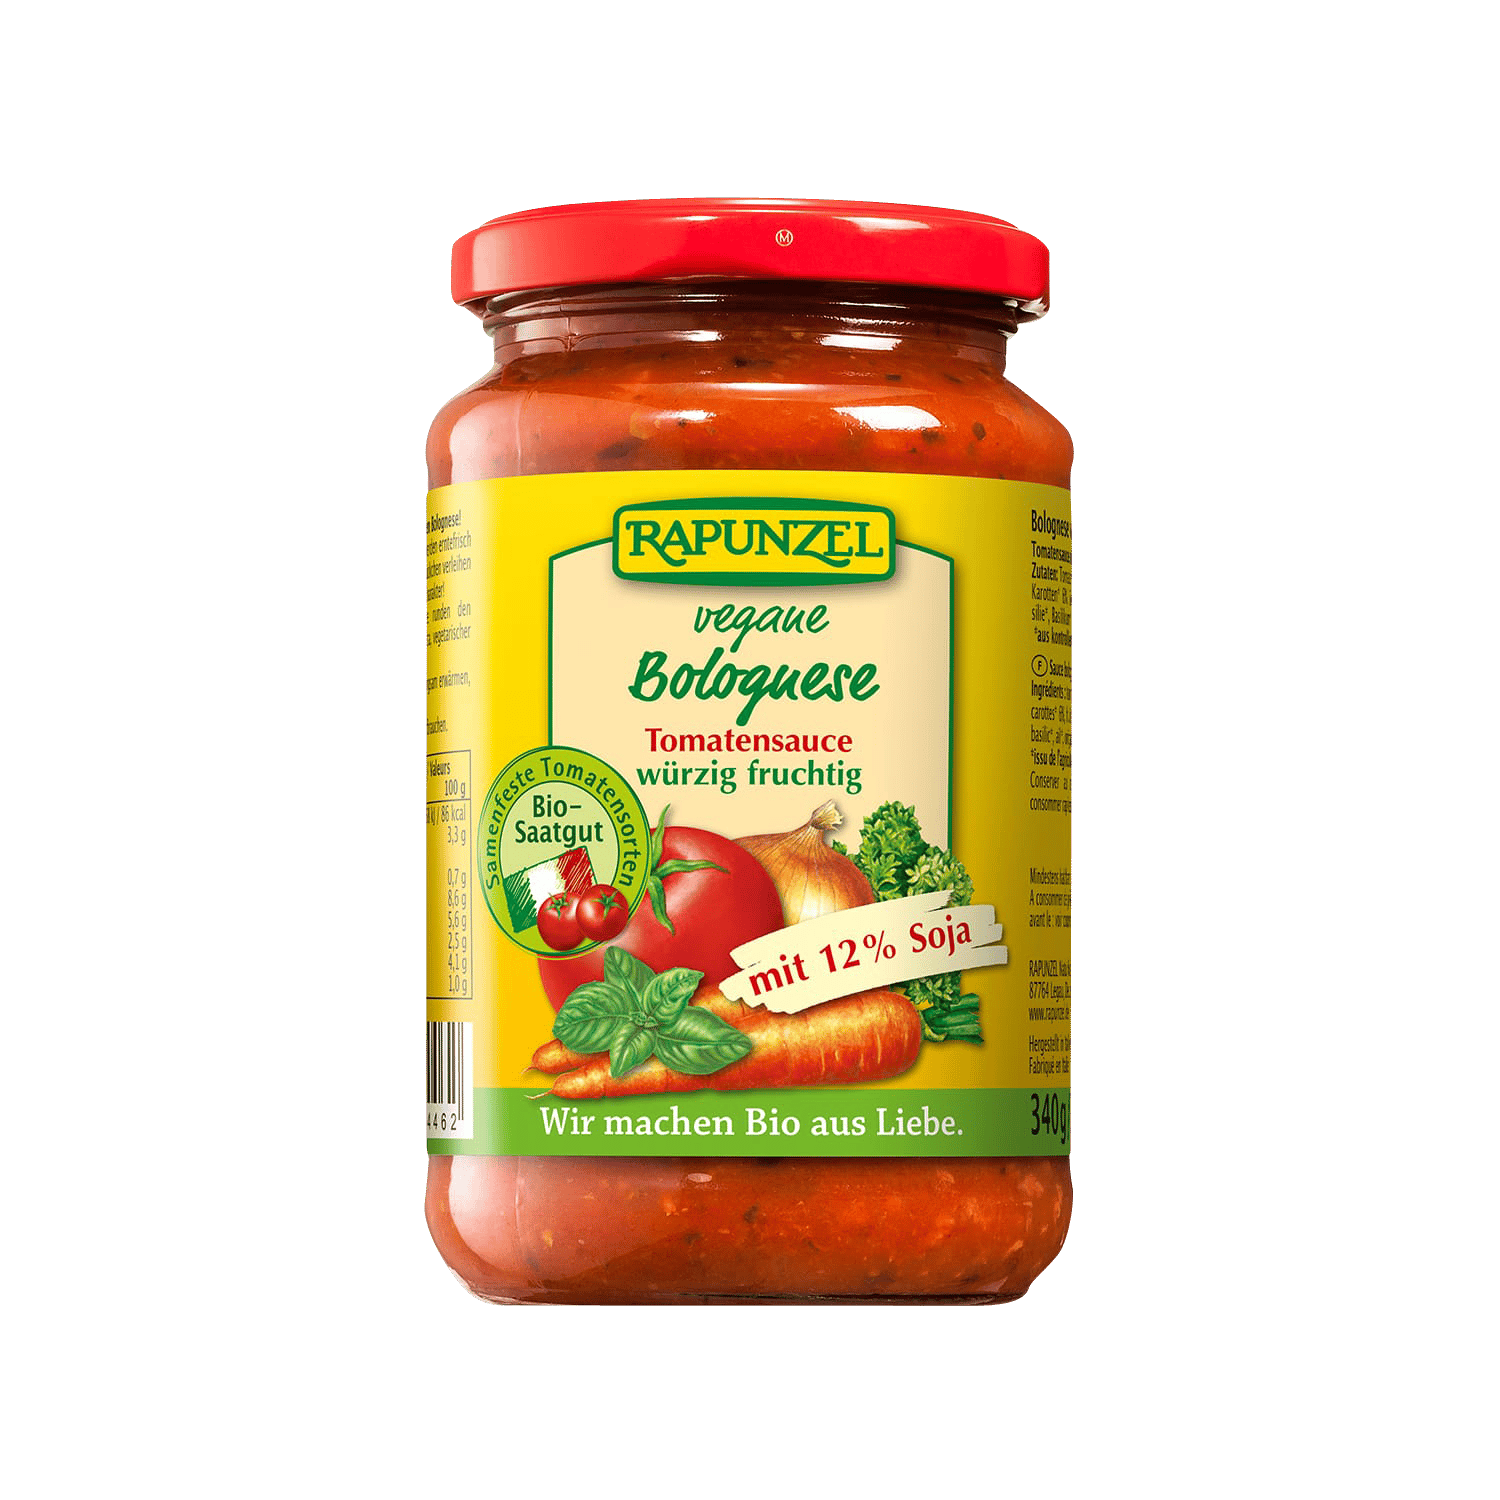 Vegane Bolognese Tomatensauce, BIO, 350g